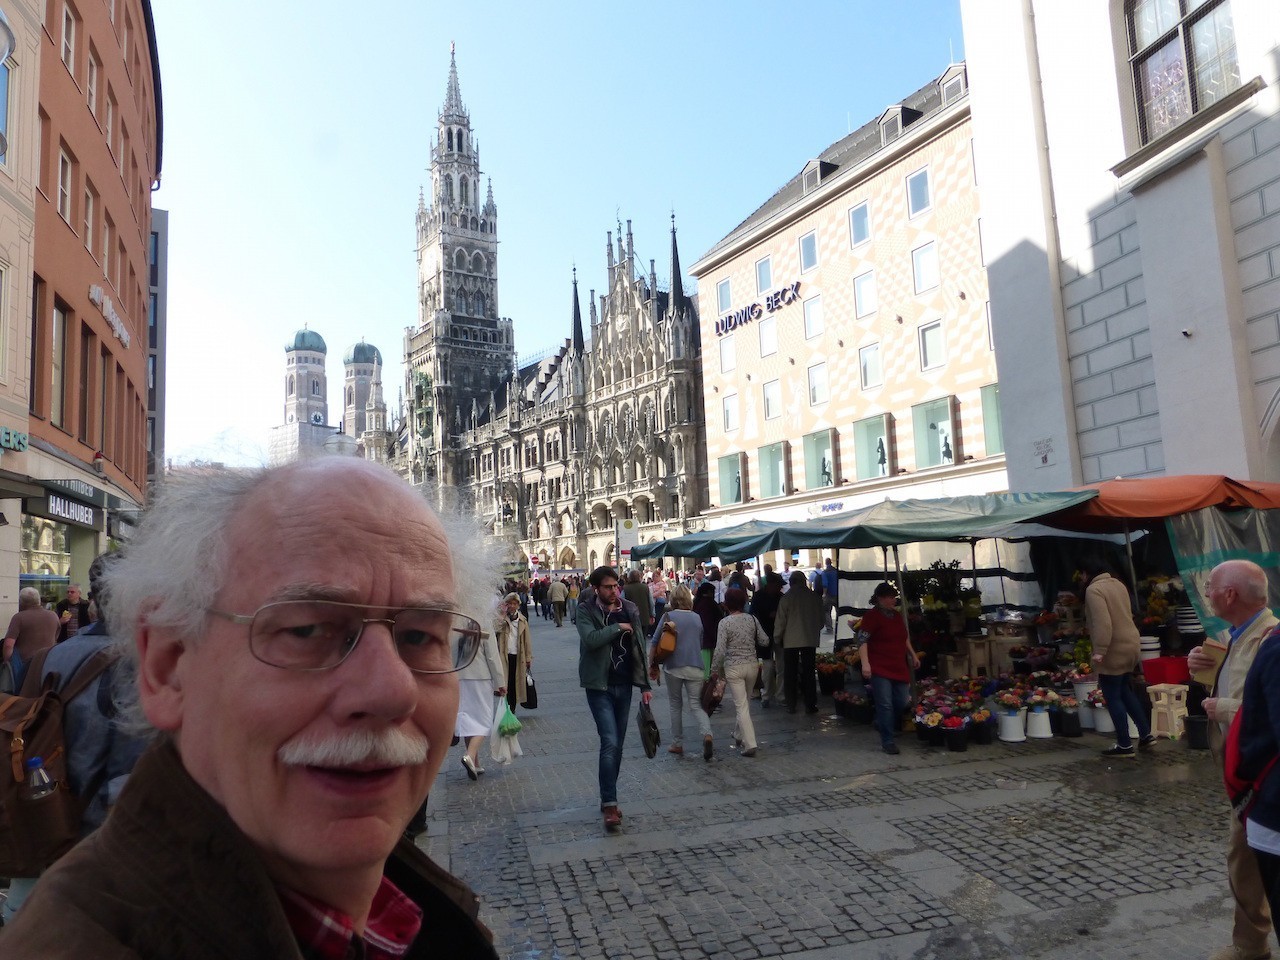 Auf Entdeckungstour: Peter Strotmann unweit des Münchener Rathauses am Marienplatz. Bildvorlage: Peter Strohmann 